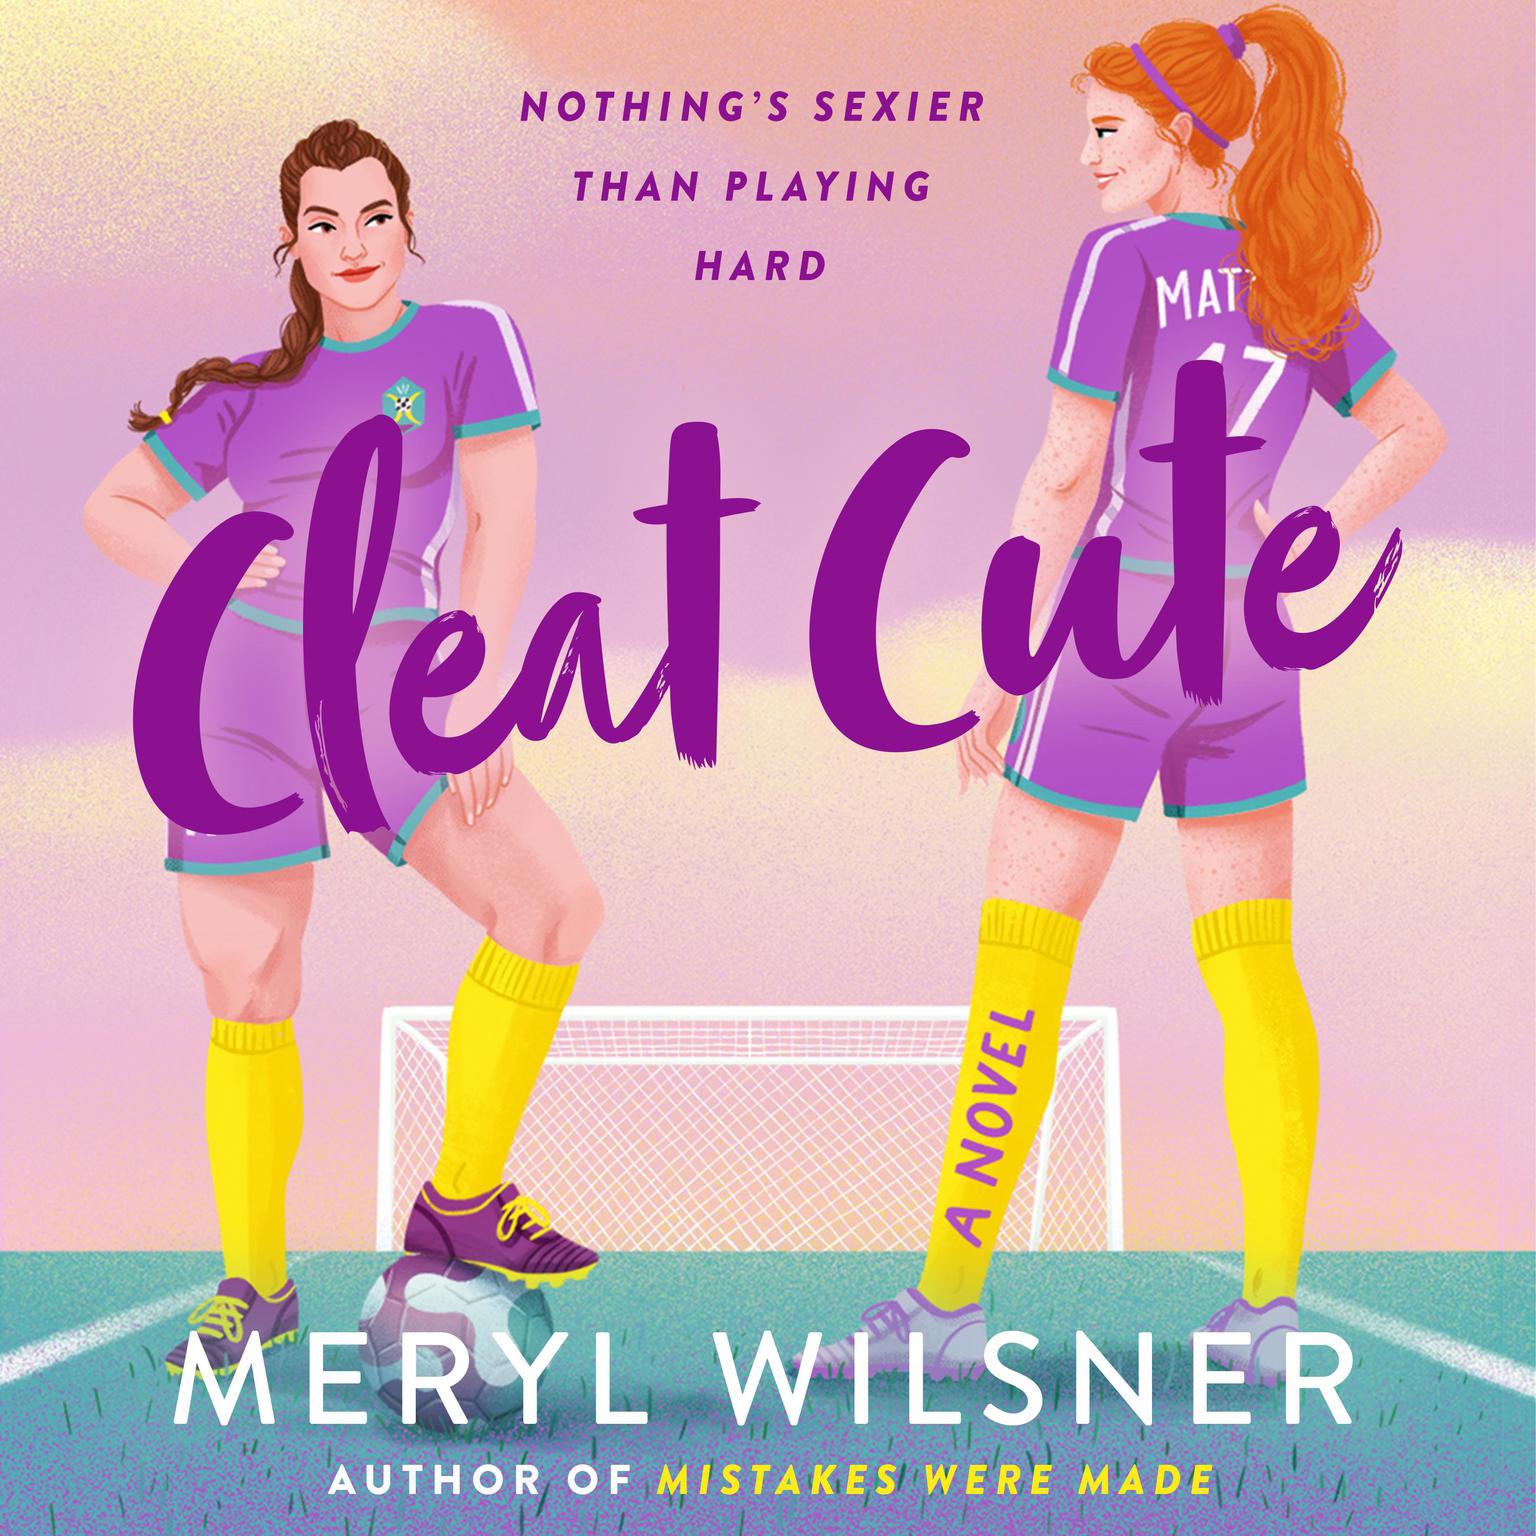 Cleat Cute: A Novel Audiobook, by Meryl Wilsner